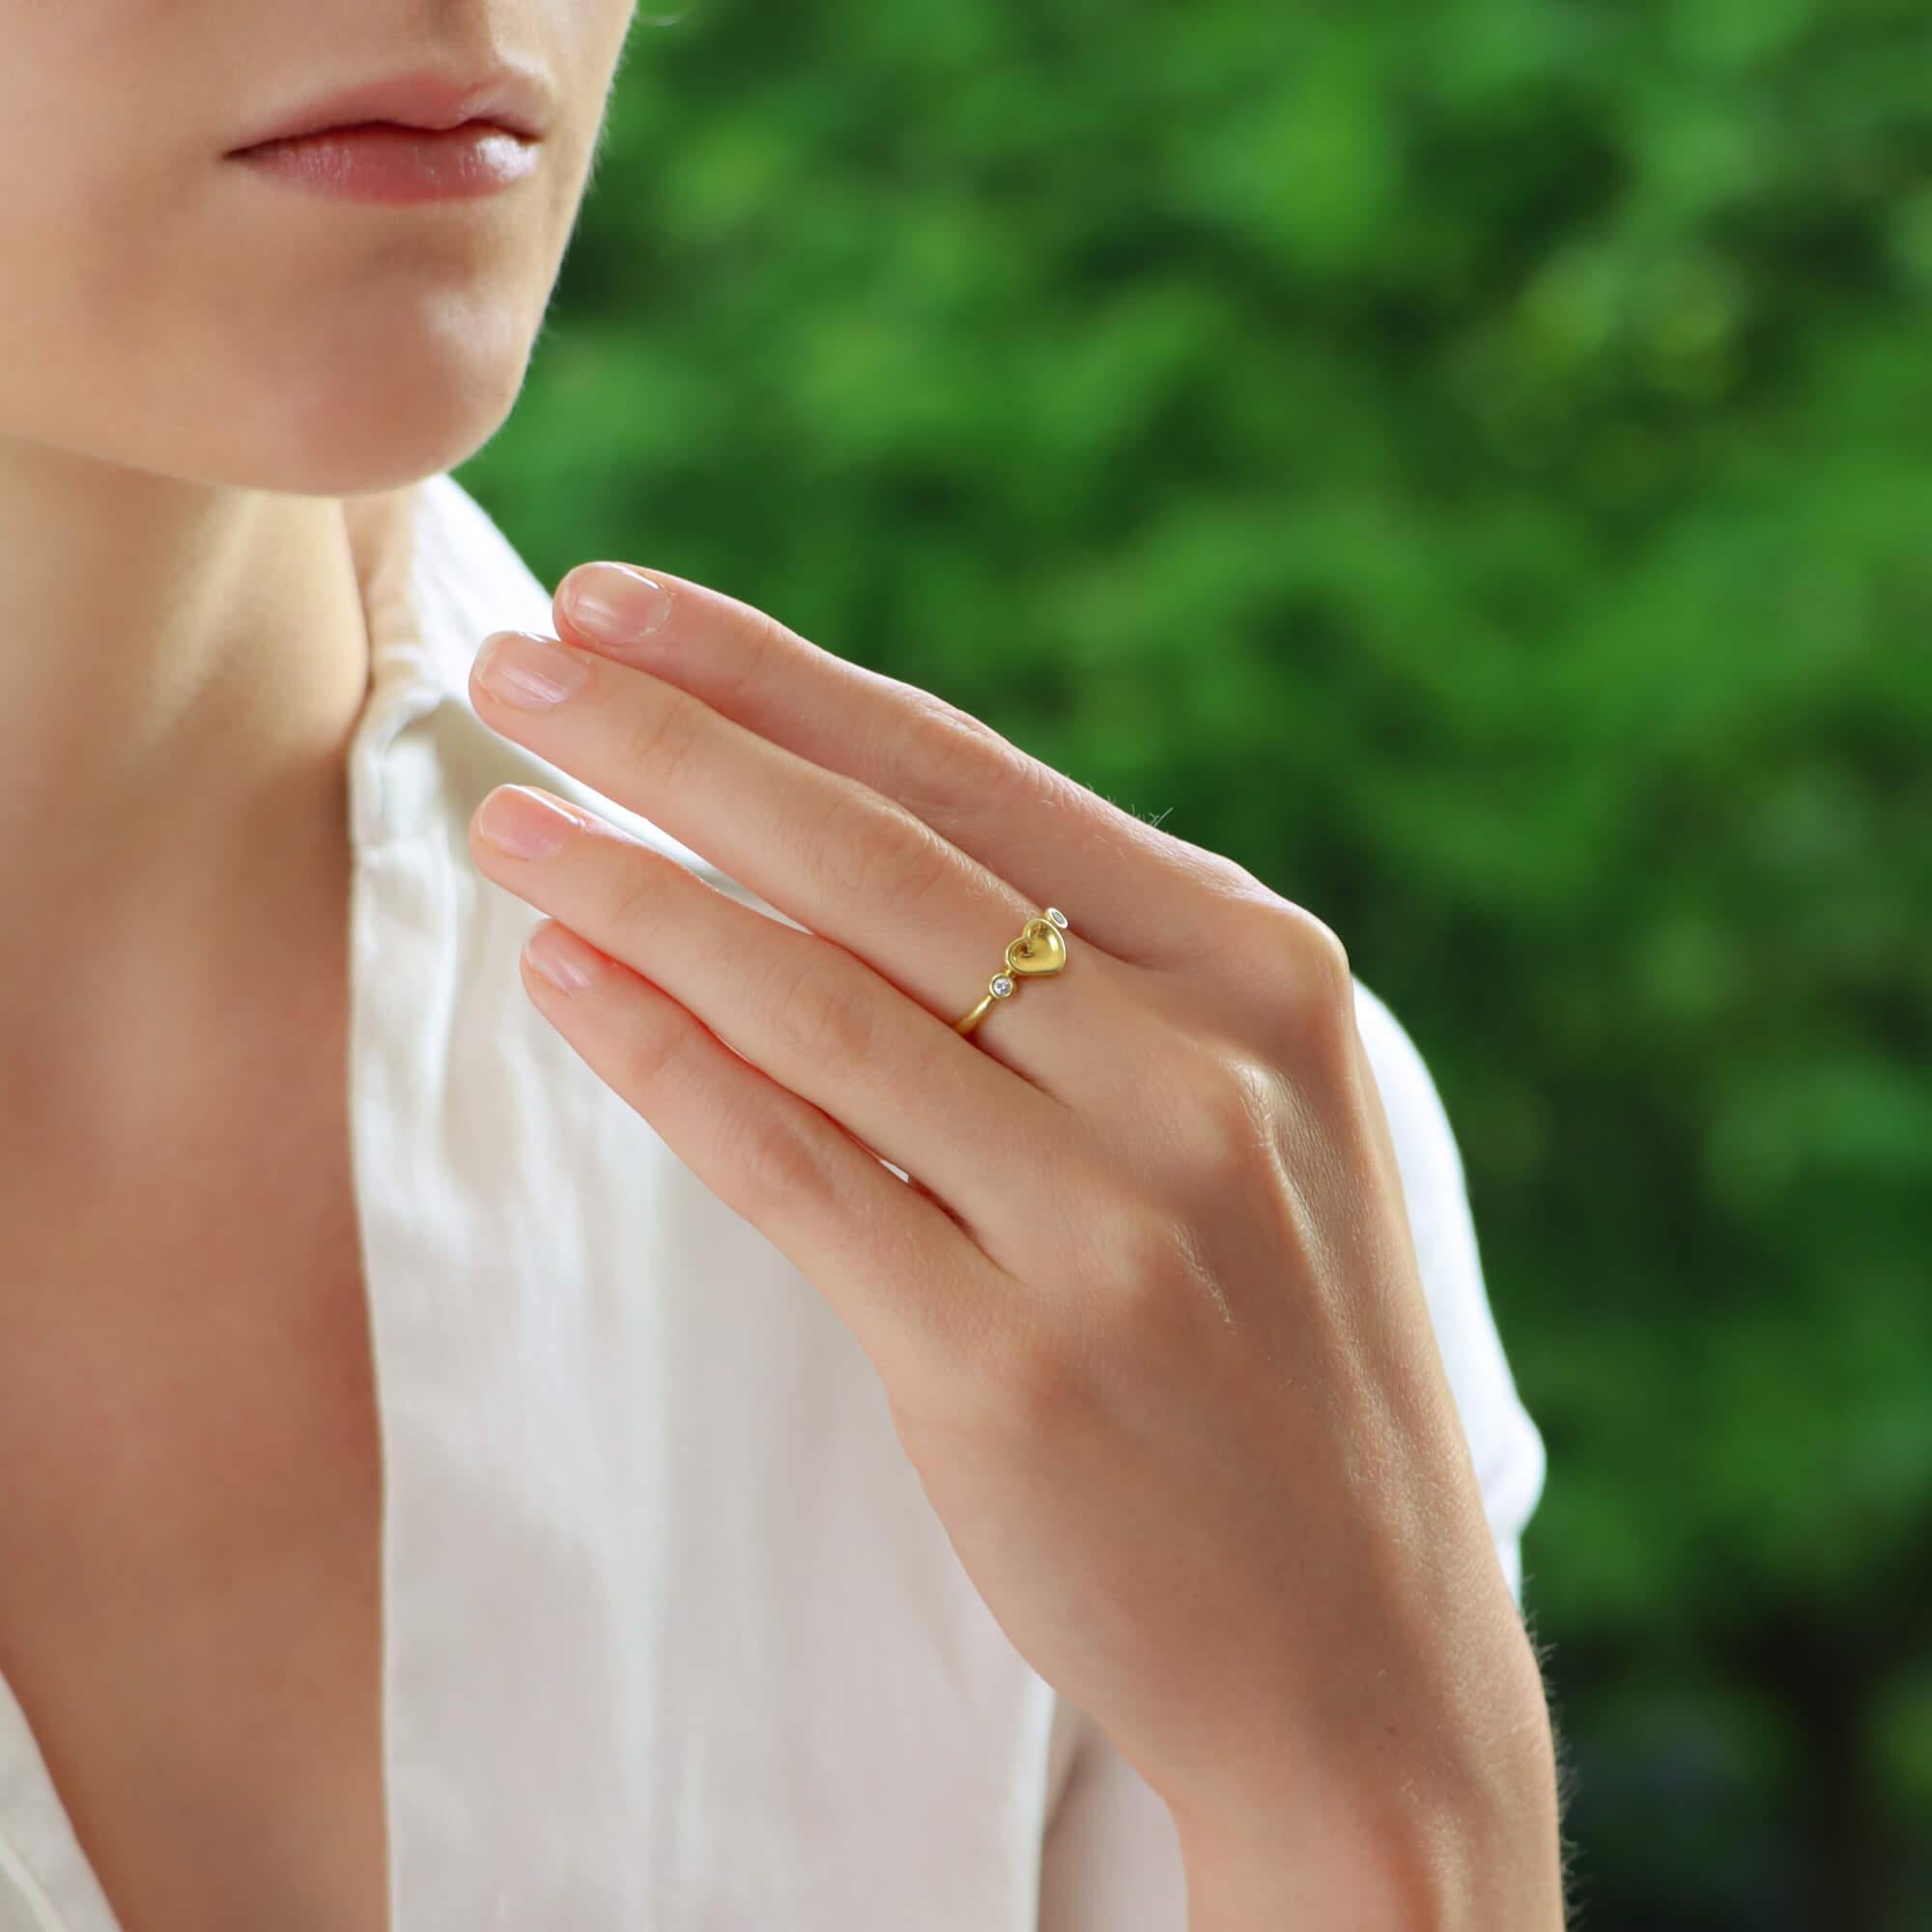  Eine schöne Vintage Elsa Peretti für Tiffany & Co. voll Herz Diamantring in 18k Gelbgold gesetzt.

Der Ring zeigt das ikonische Elsa-Peretti-Herzdesign und wird von zwei runden Diamanten im Brillantschliff eingefasst. Aufgrund der Größe und des